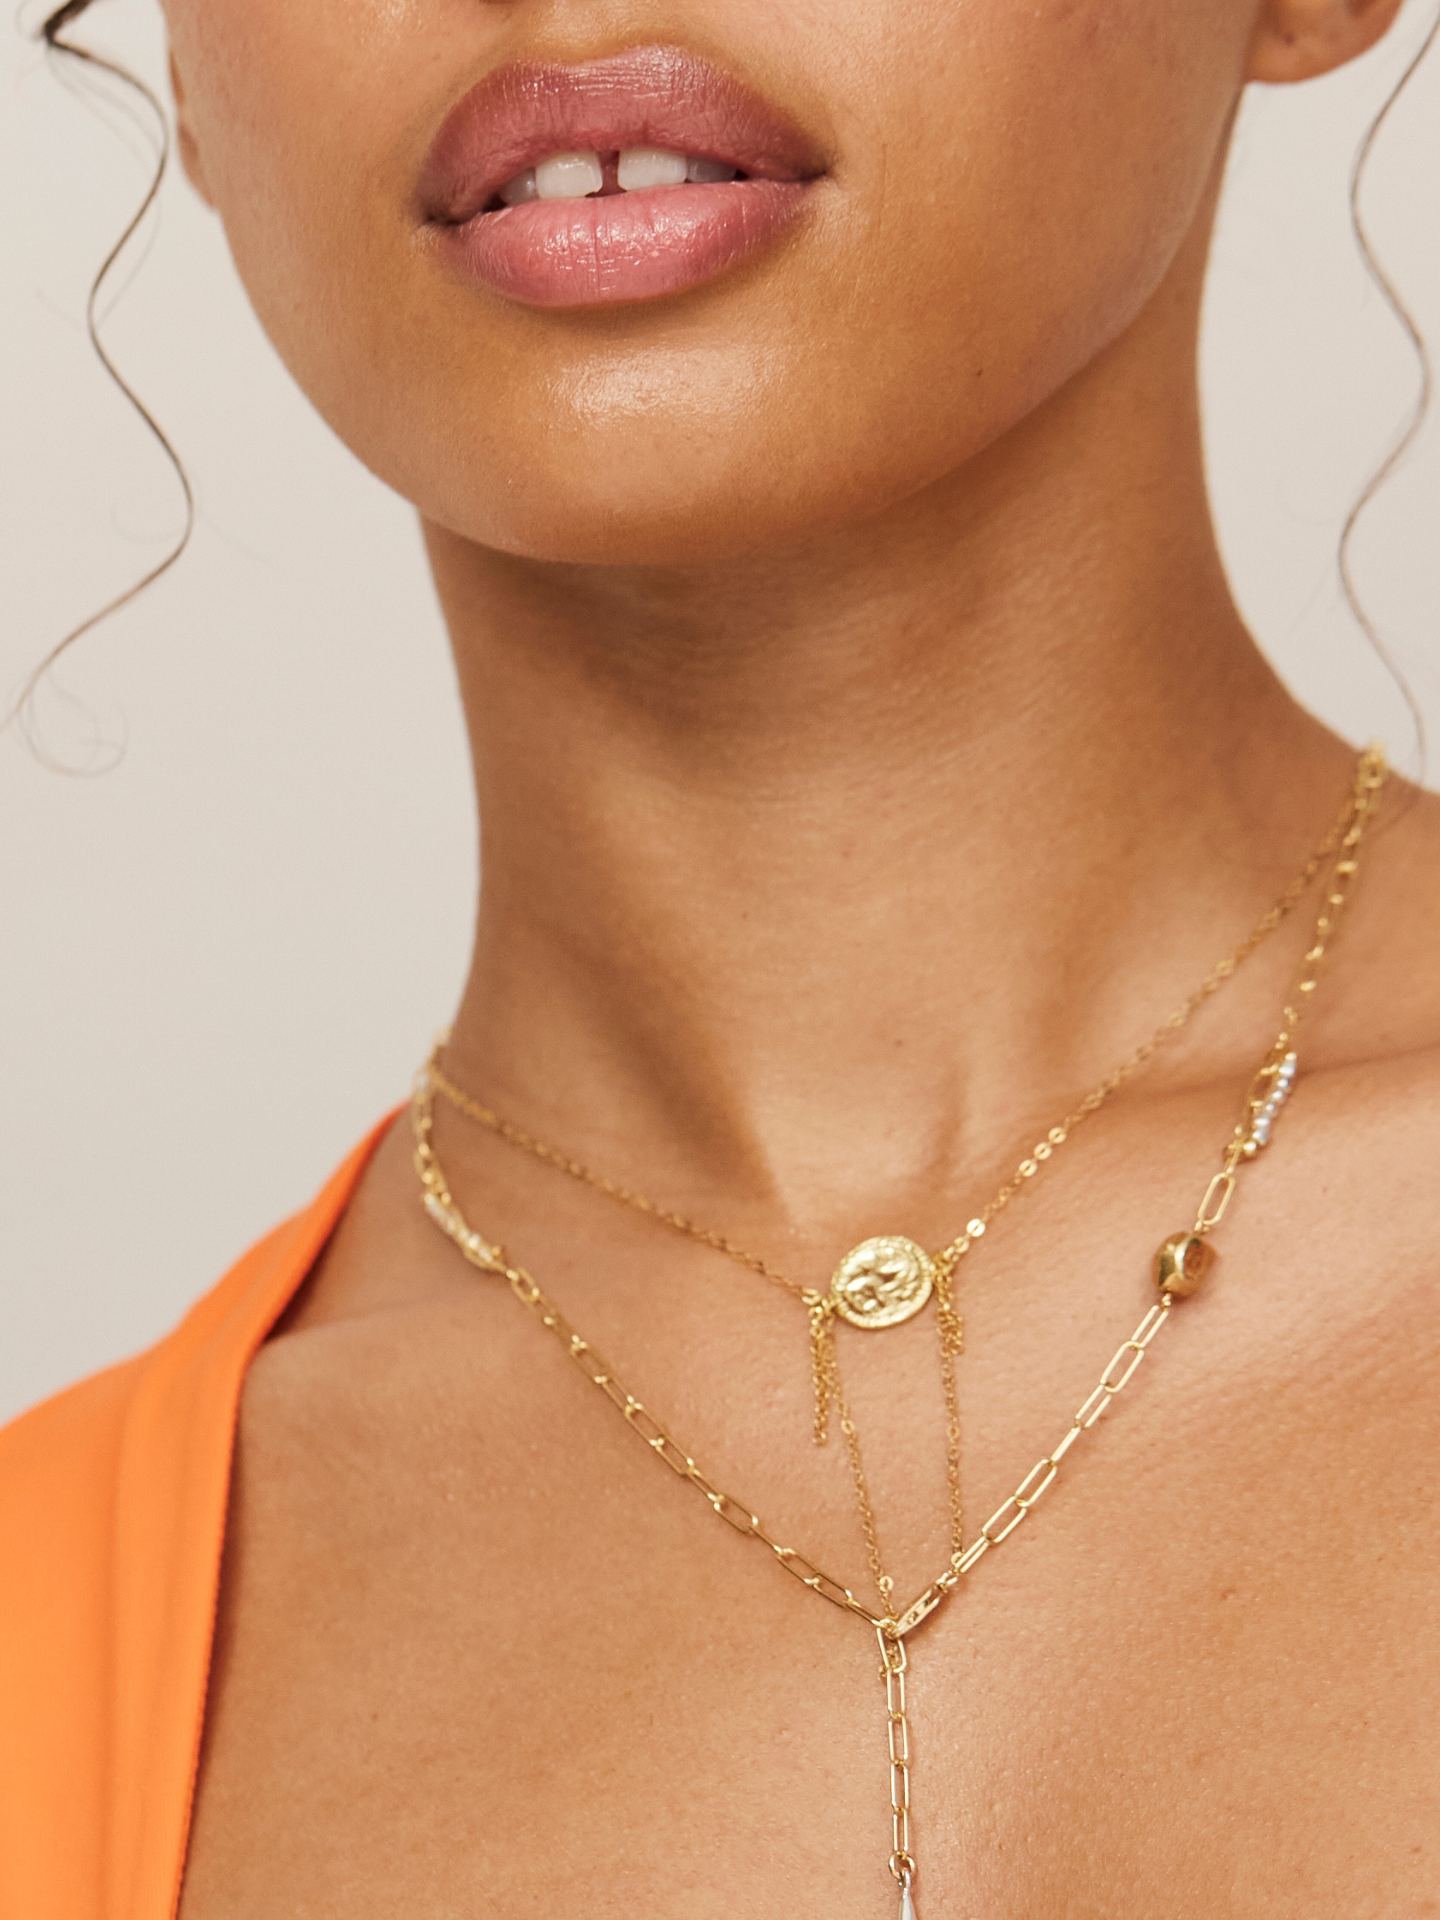 Attraktive Frau mit vollen Lippen trägt 2 Halsketten in Gold.